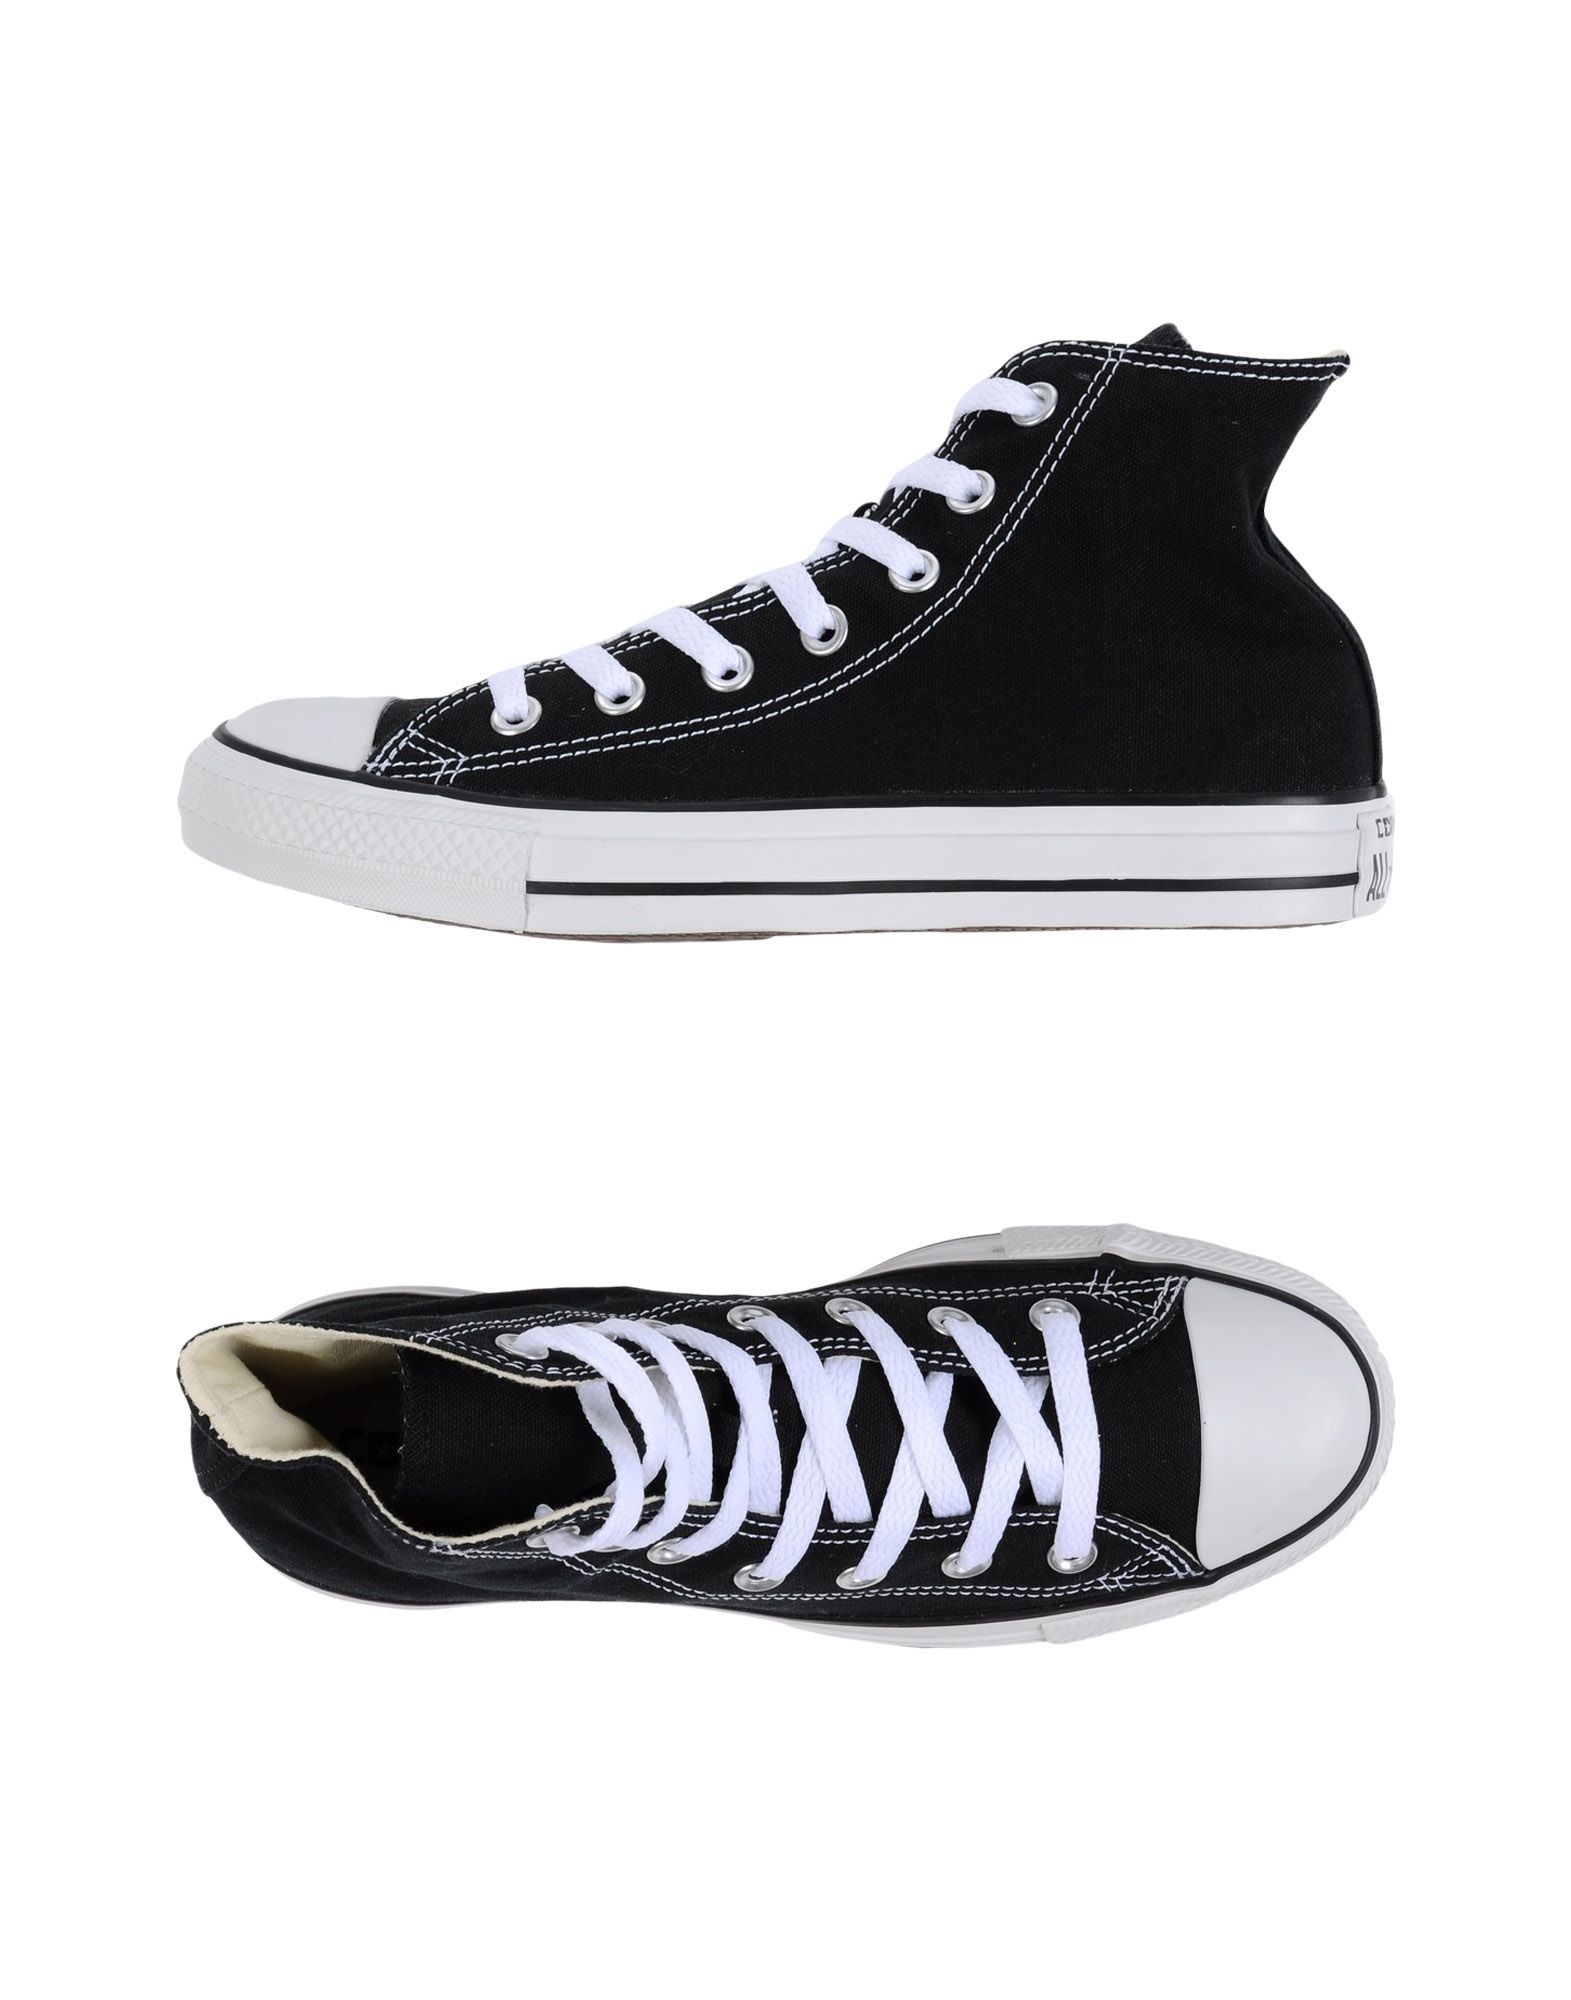 Converse All Star Sneakers Schwarz Damen Schuhe,converse - Converse Shoes For Girls Gray - HD Wallpaper 